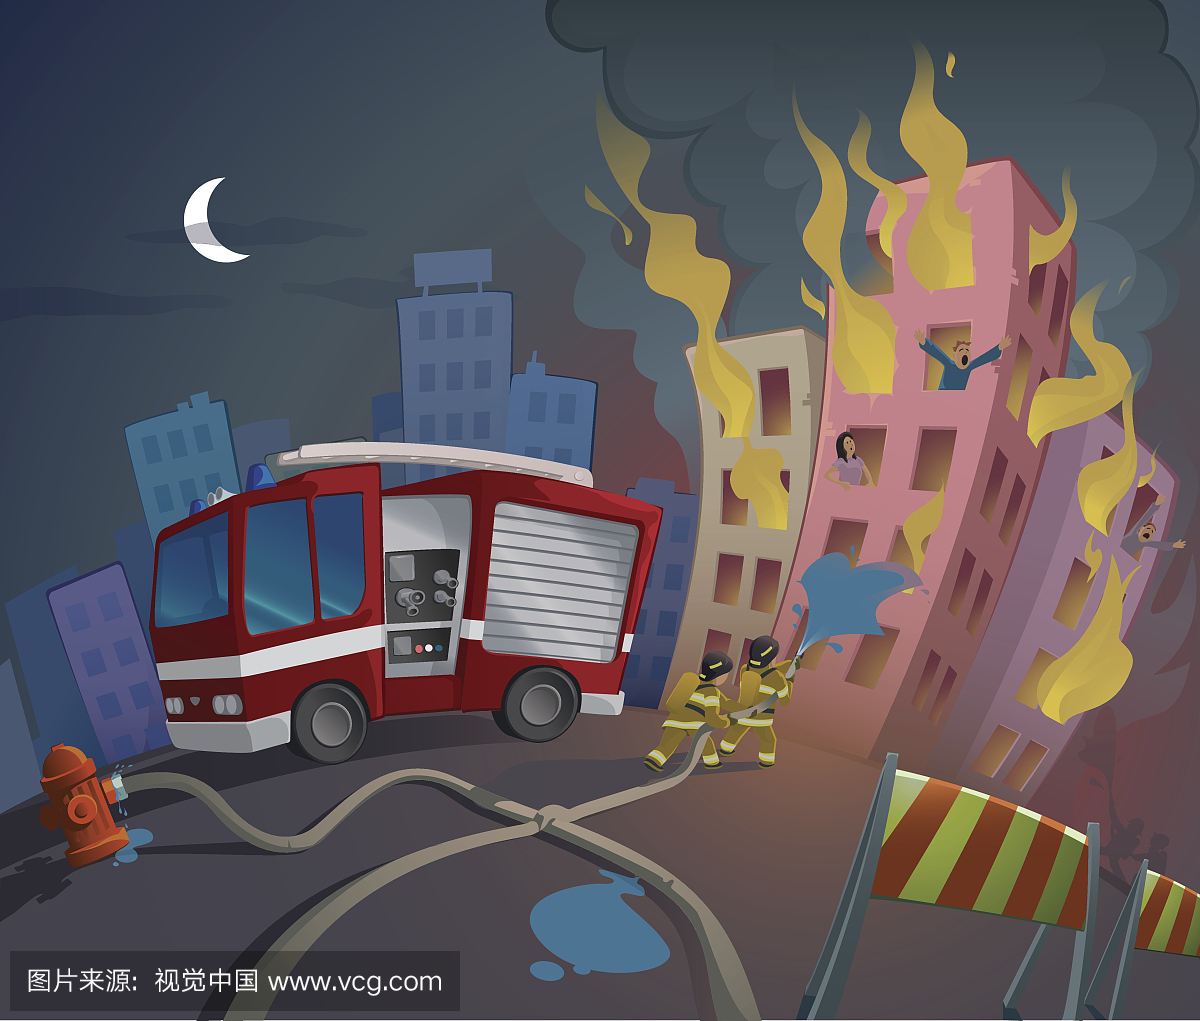 消防员的卡通形象救人们免受火灾